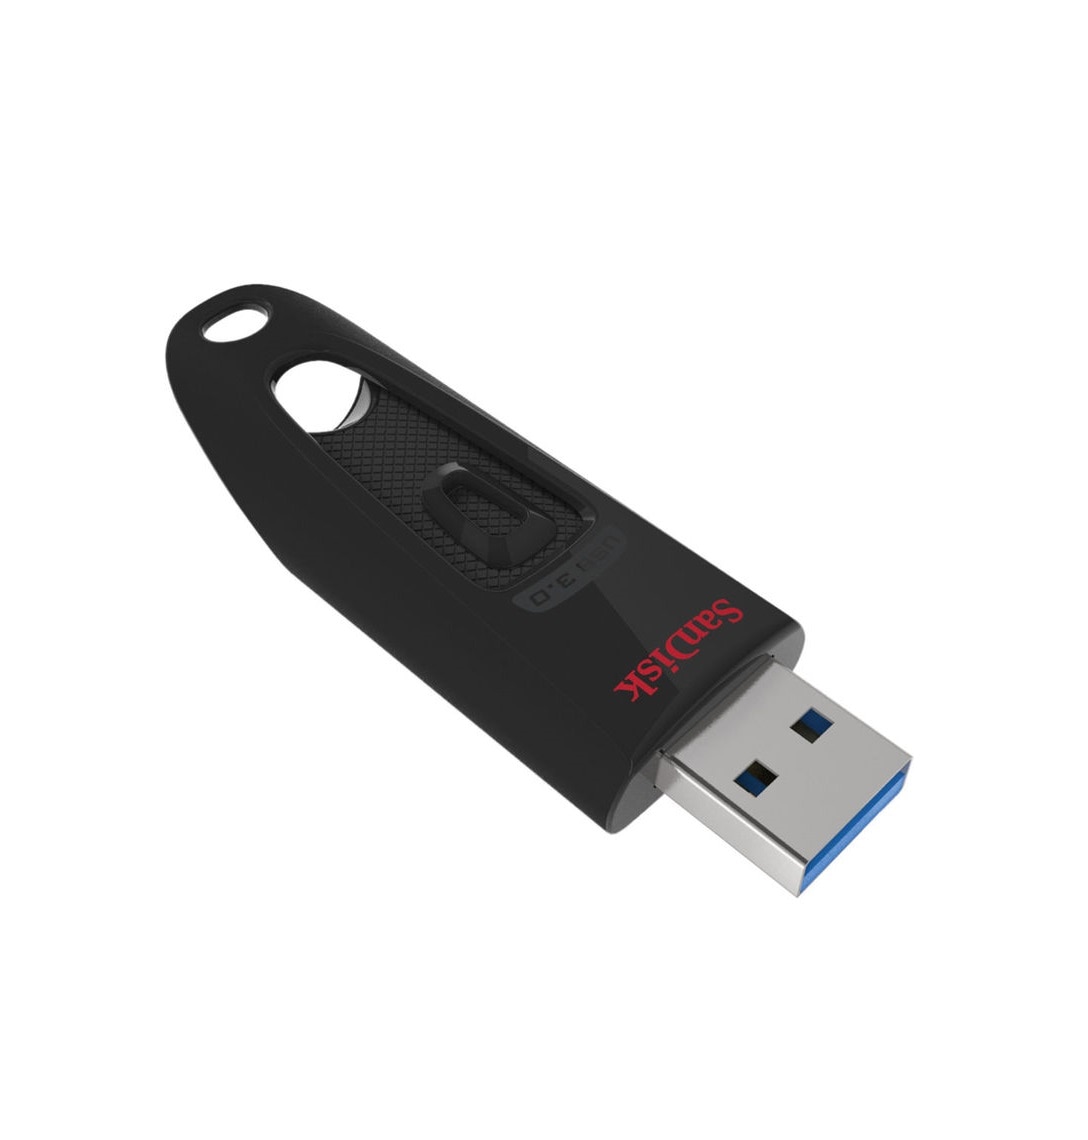 SanDisk Ultra USB 3.0 64GB Flash Drive